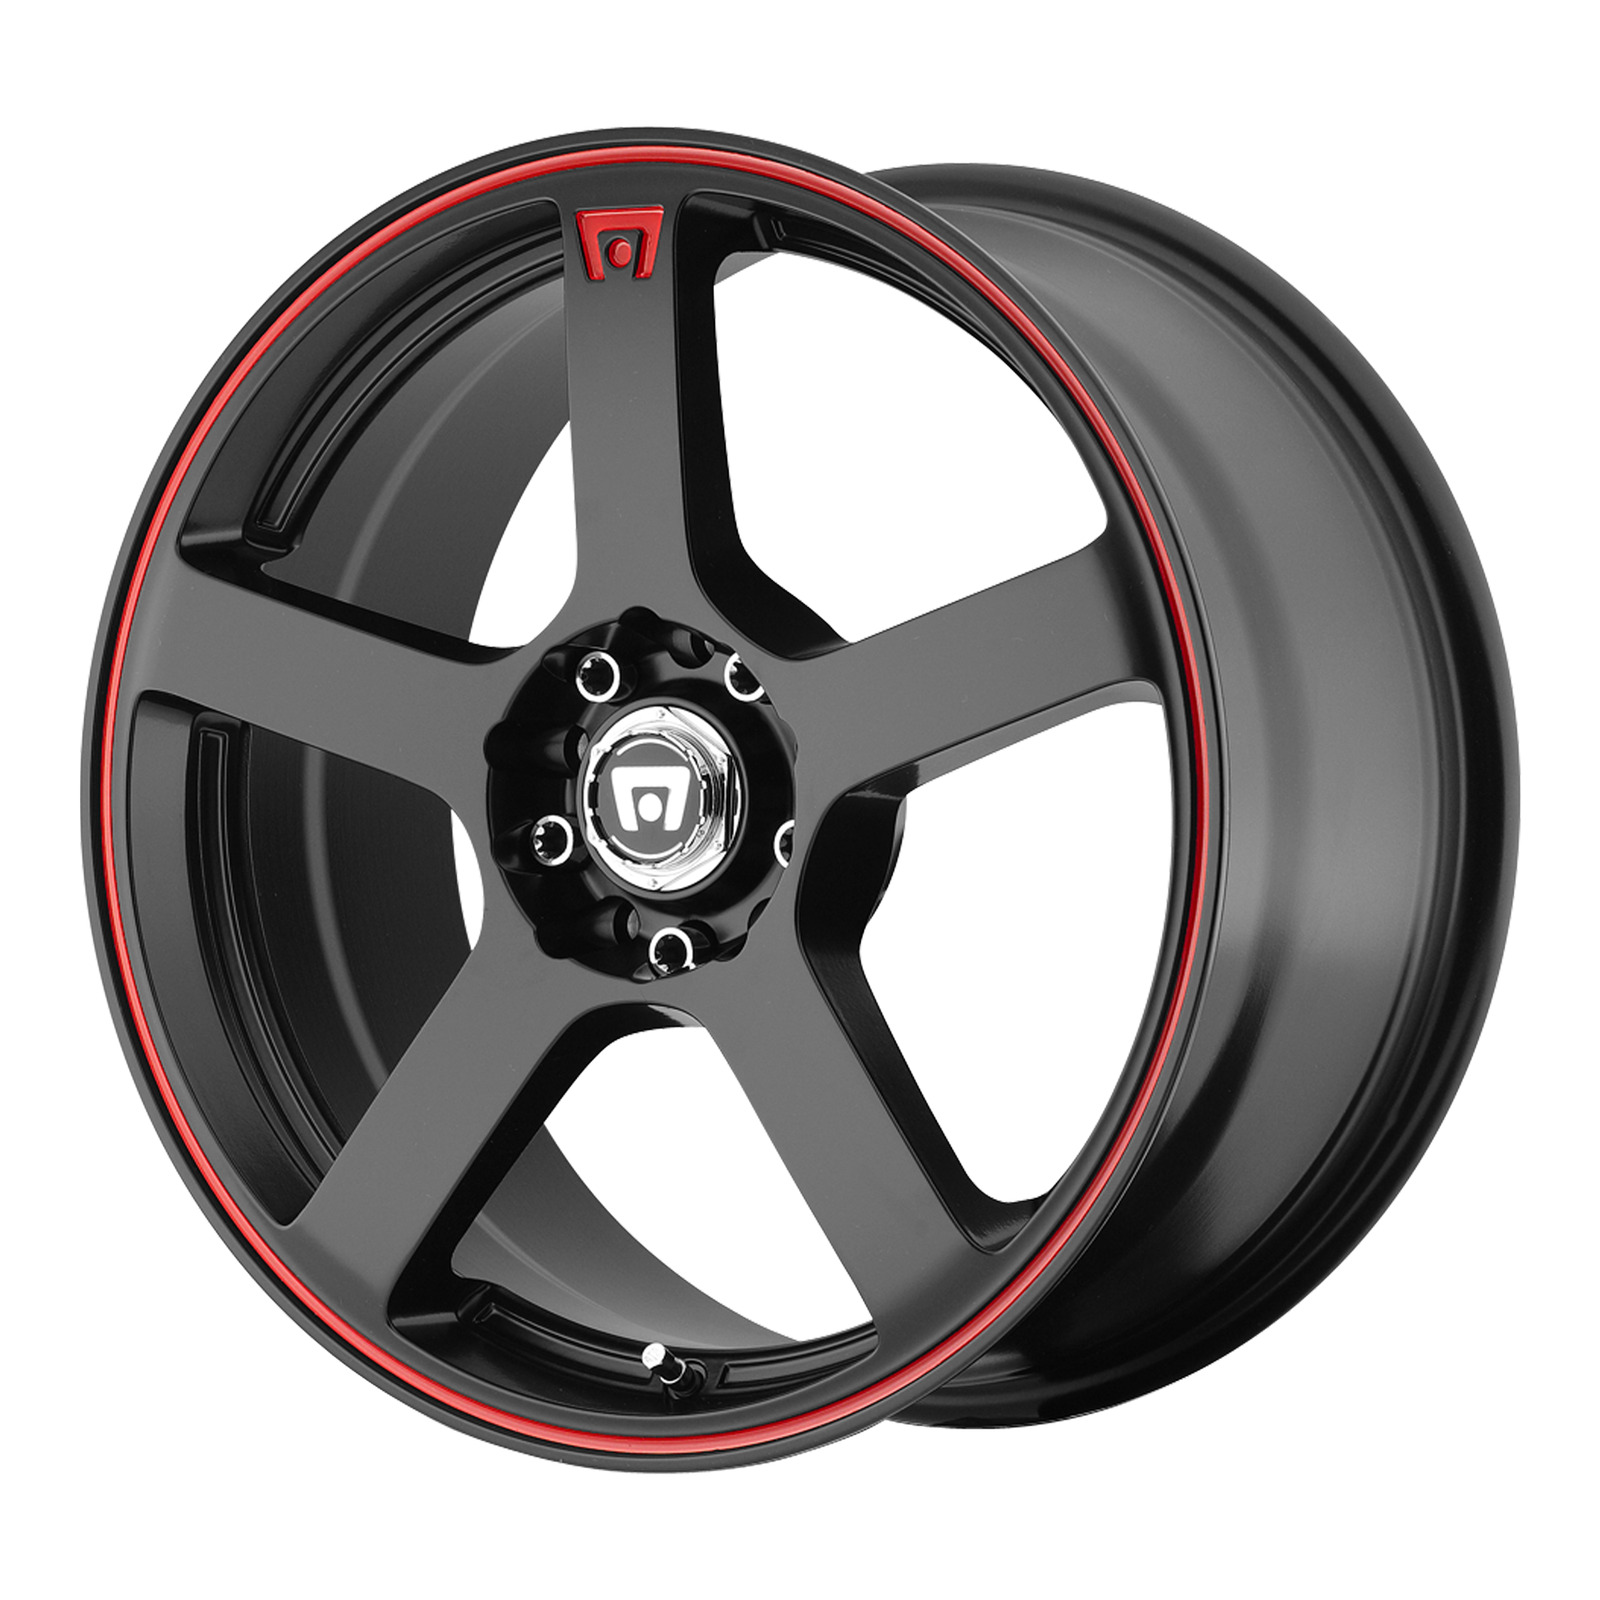 17x7 Motegi MR116 FS5 Matte Black Red Racing Stripe Wheel 5x100/5x4.5 (40mm)